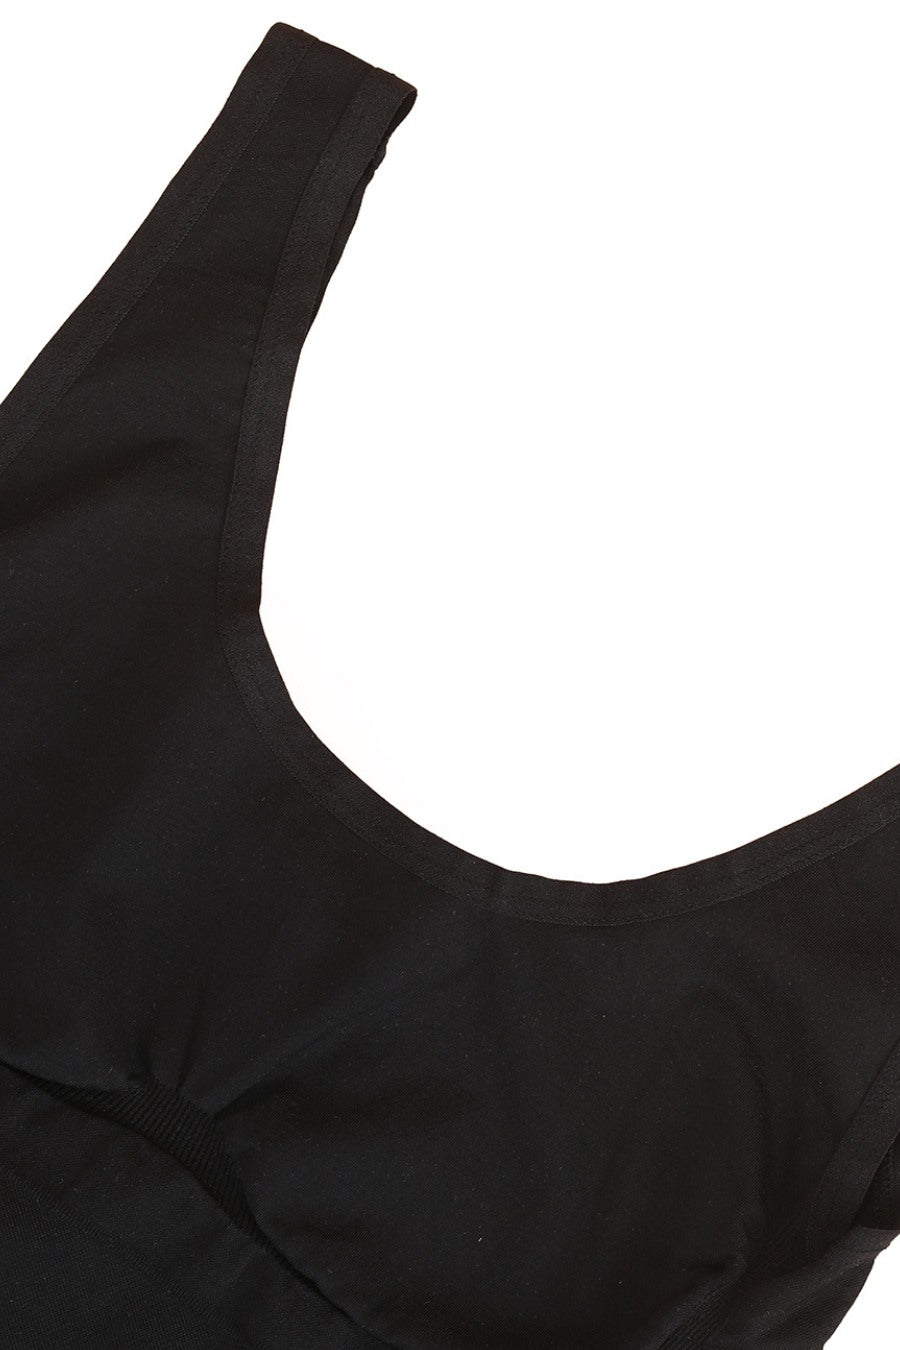 Mila Shaping Bodysuit - Black Eco Contour Clothing